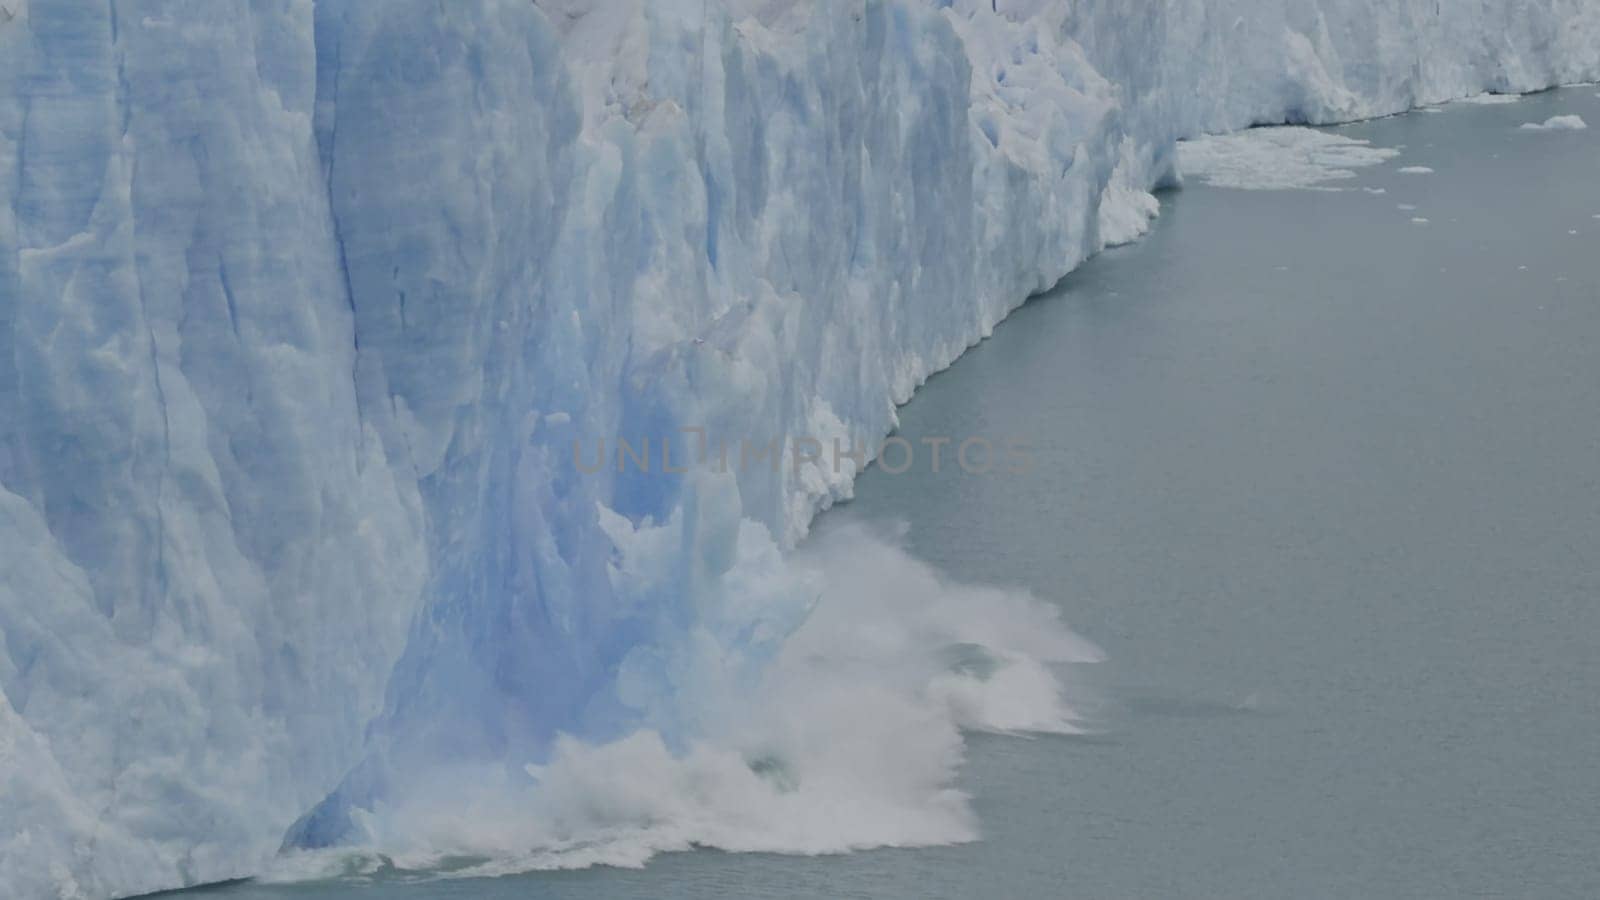 Majestic Perito Moreno Glacier Ice Collapse in Slow Motion by FerradalFCG